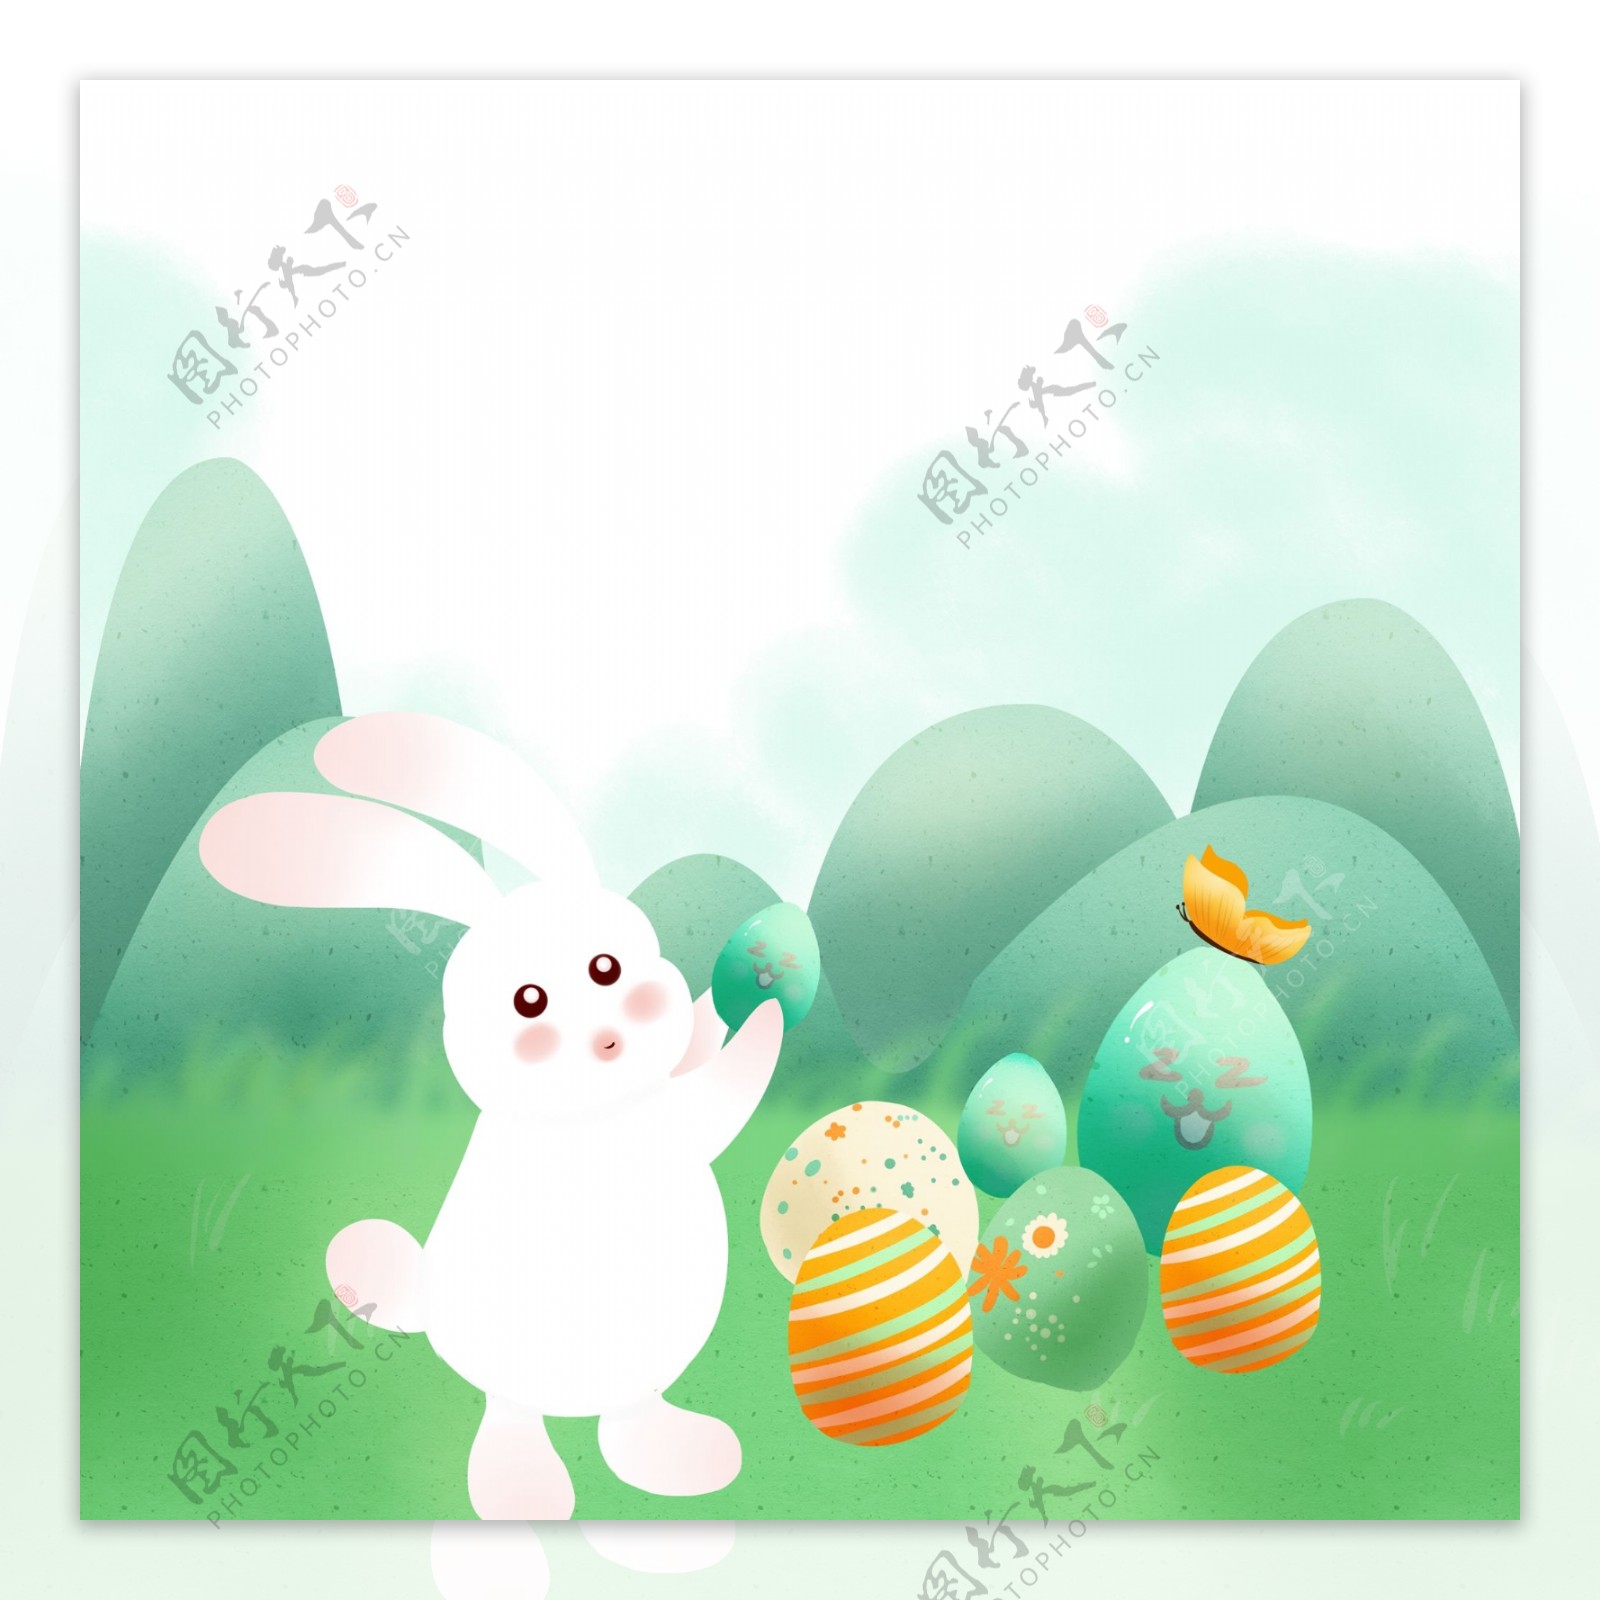 可爱兔子彩色鸡蛋装饰元素